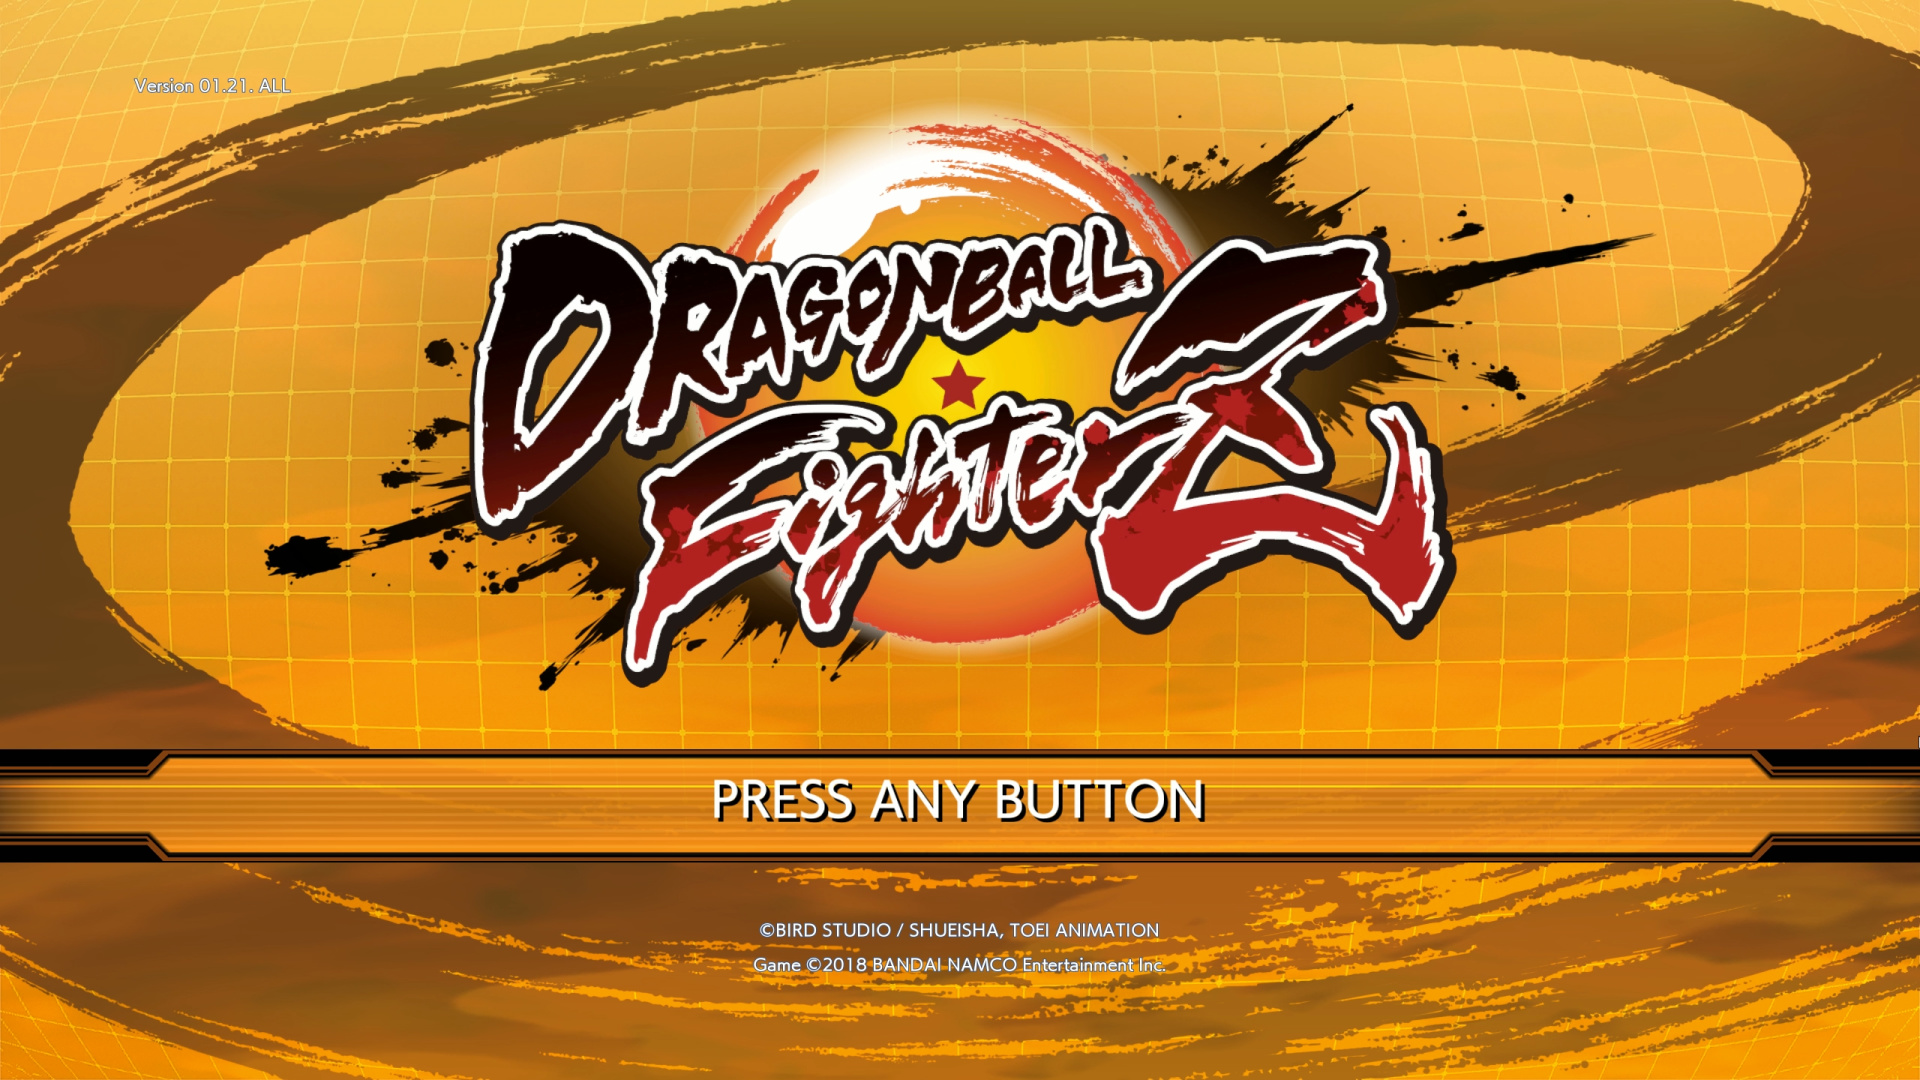 Release! Dragon Ball Fighter Z Mugen 3D